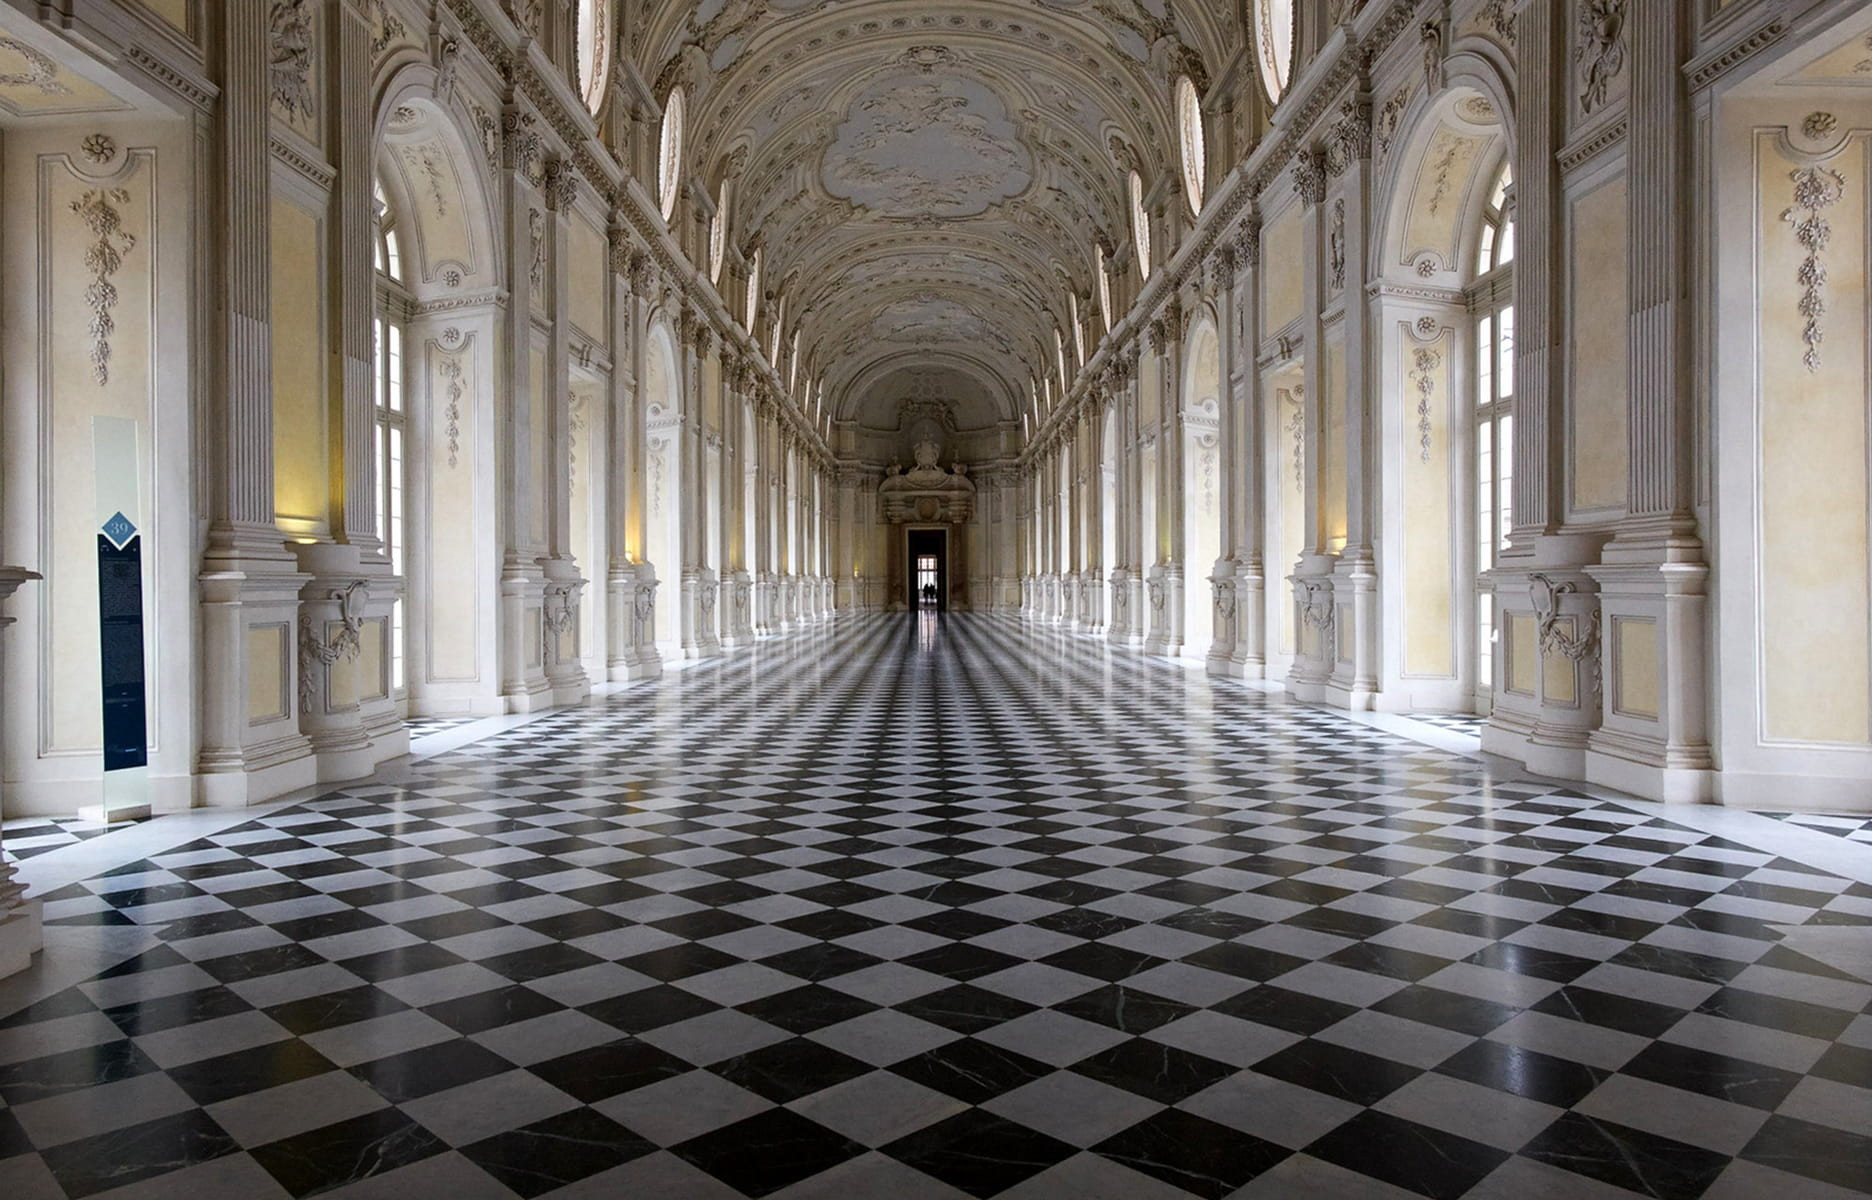 L’ancienne résidence de campagne des ducs de Savoie est le Versailles turinois. Le plus imposant des 18 châteaux qu’ils possédaient dans la région fut longtemps abandonné aux chèvres, avant une restauration titanesque. Le résultat, stucs, galeries des glaces et jardins à la française, est émouvant.